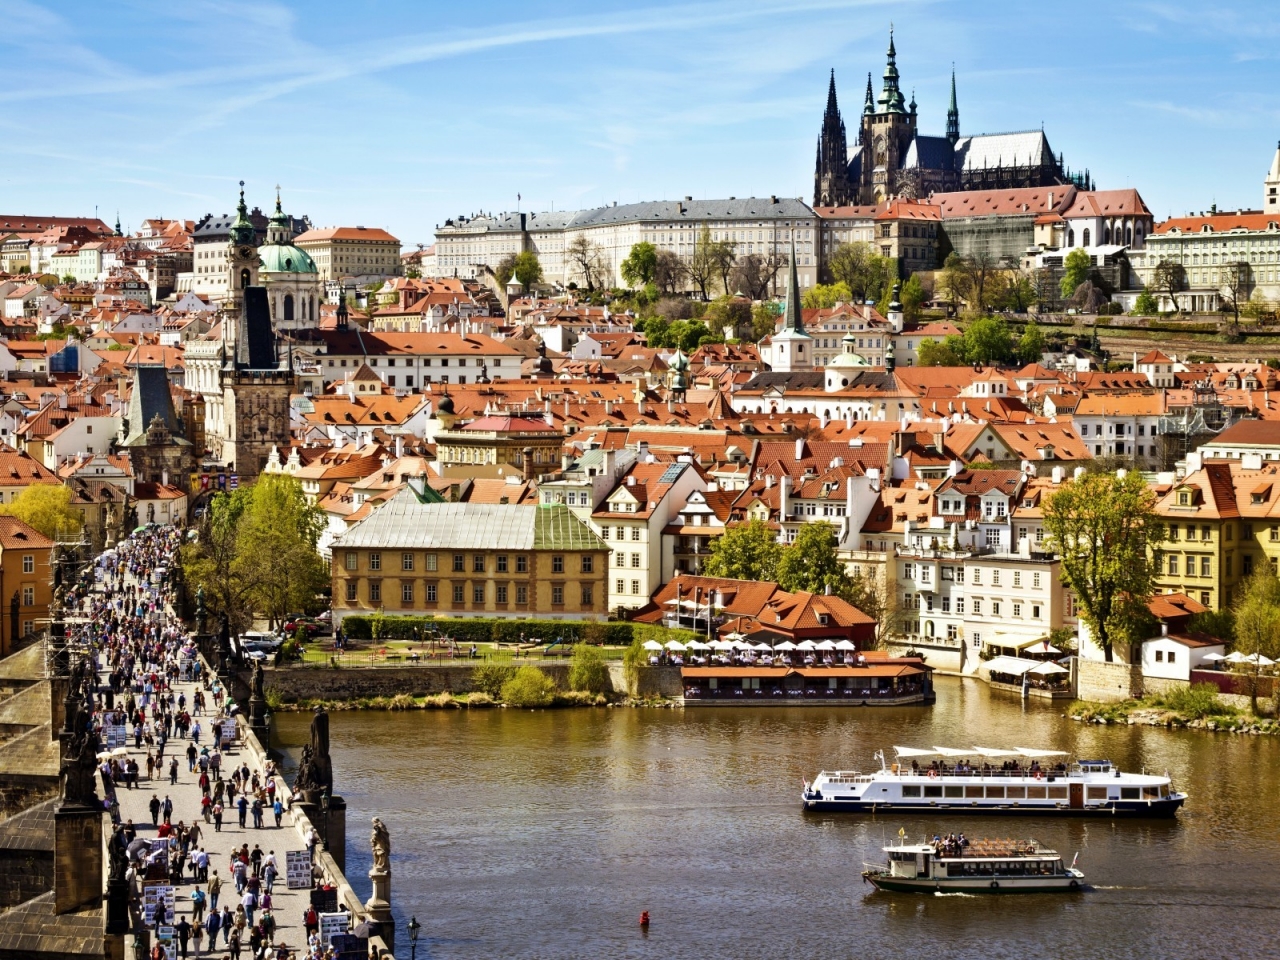 Prague City View for 1280 x 960 resolution